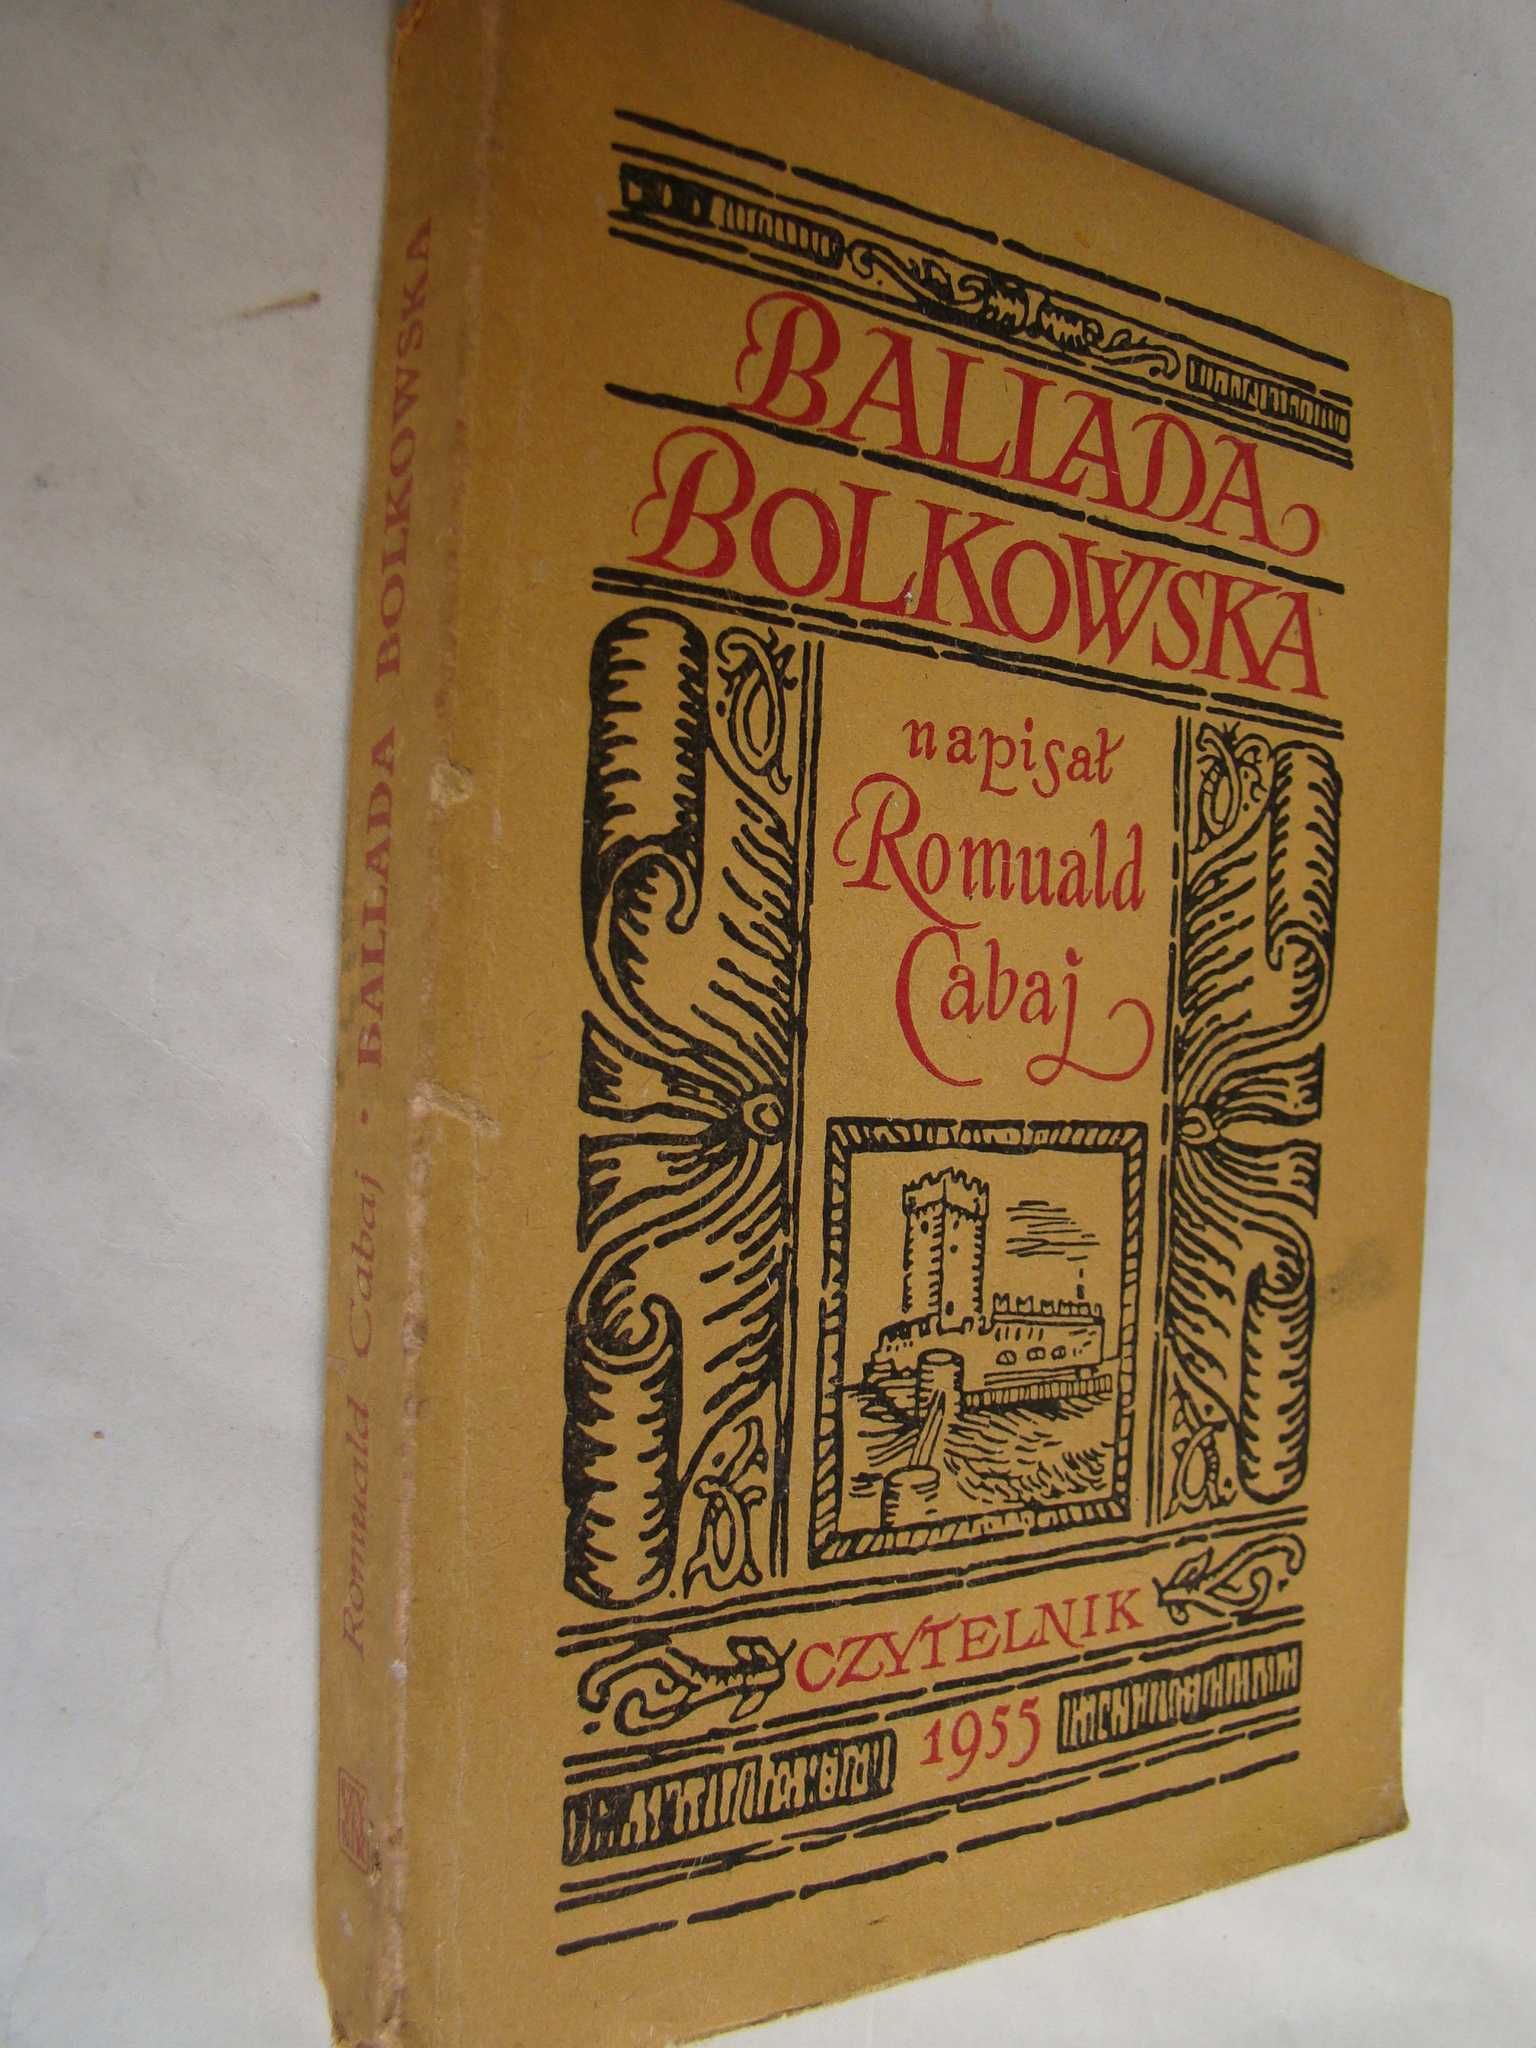 Ballada bolkowska - Romuald Cabaj - opowieść